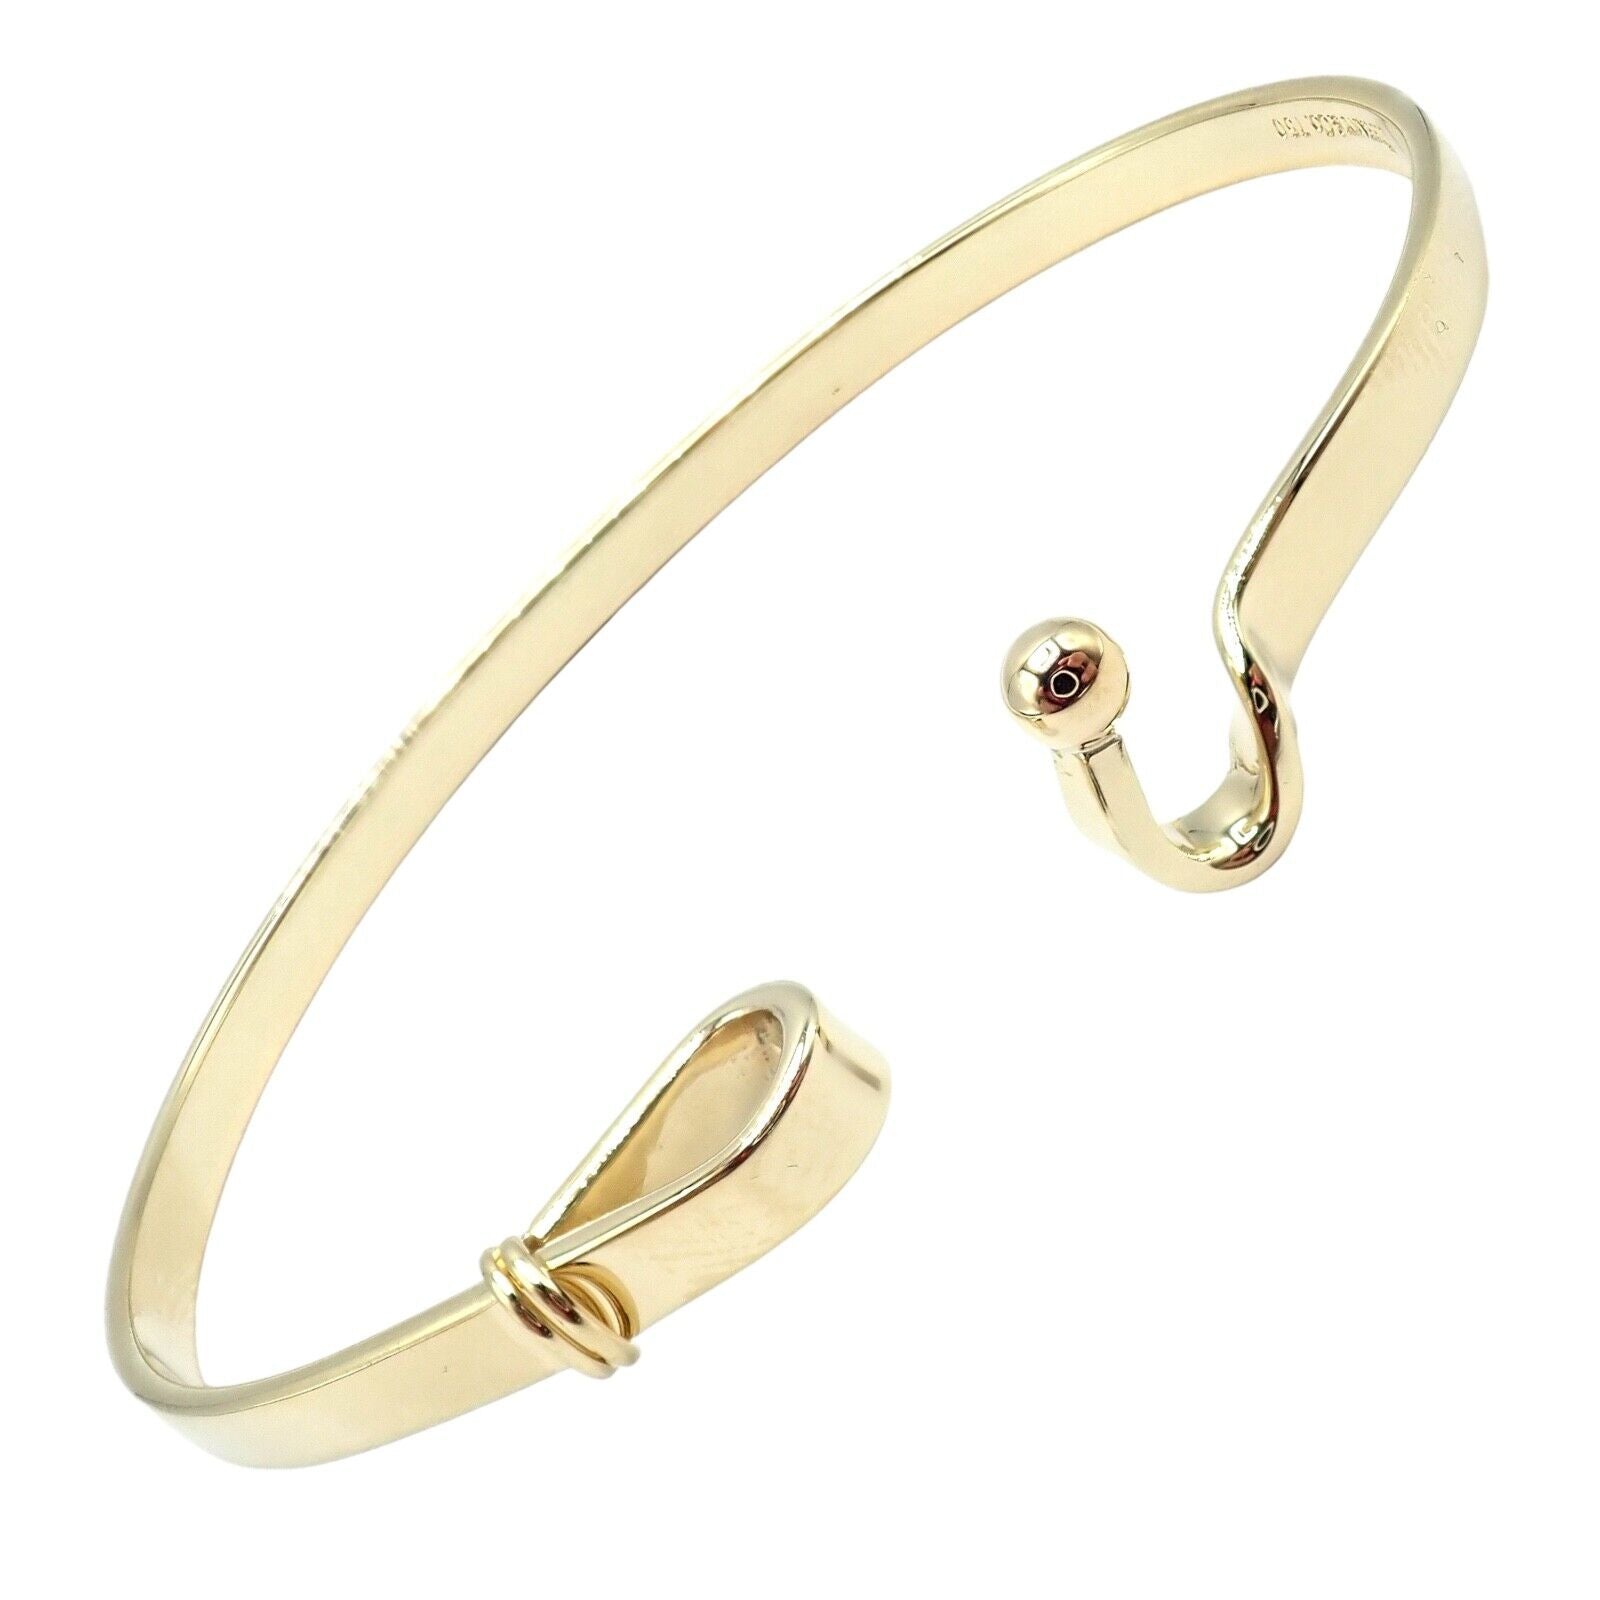 Authentic! Tiffany & Co. 18K Yellow Gold Hook Eye Bangle Bracelet